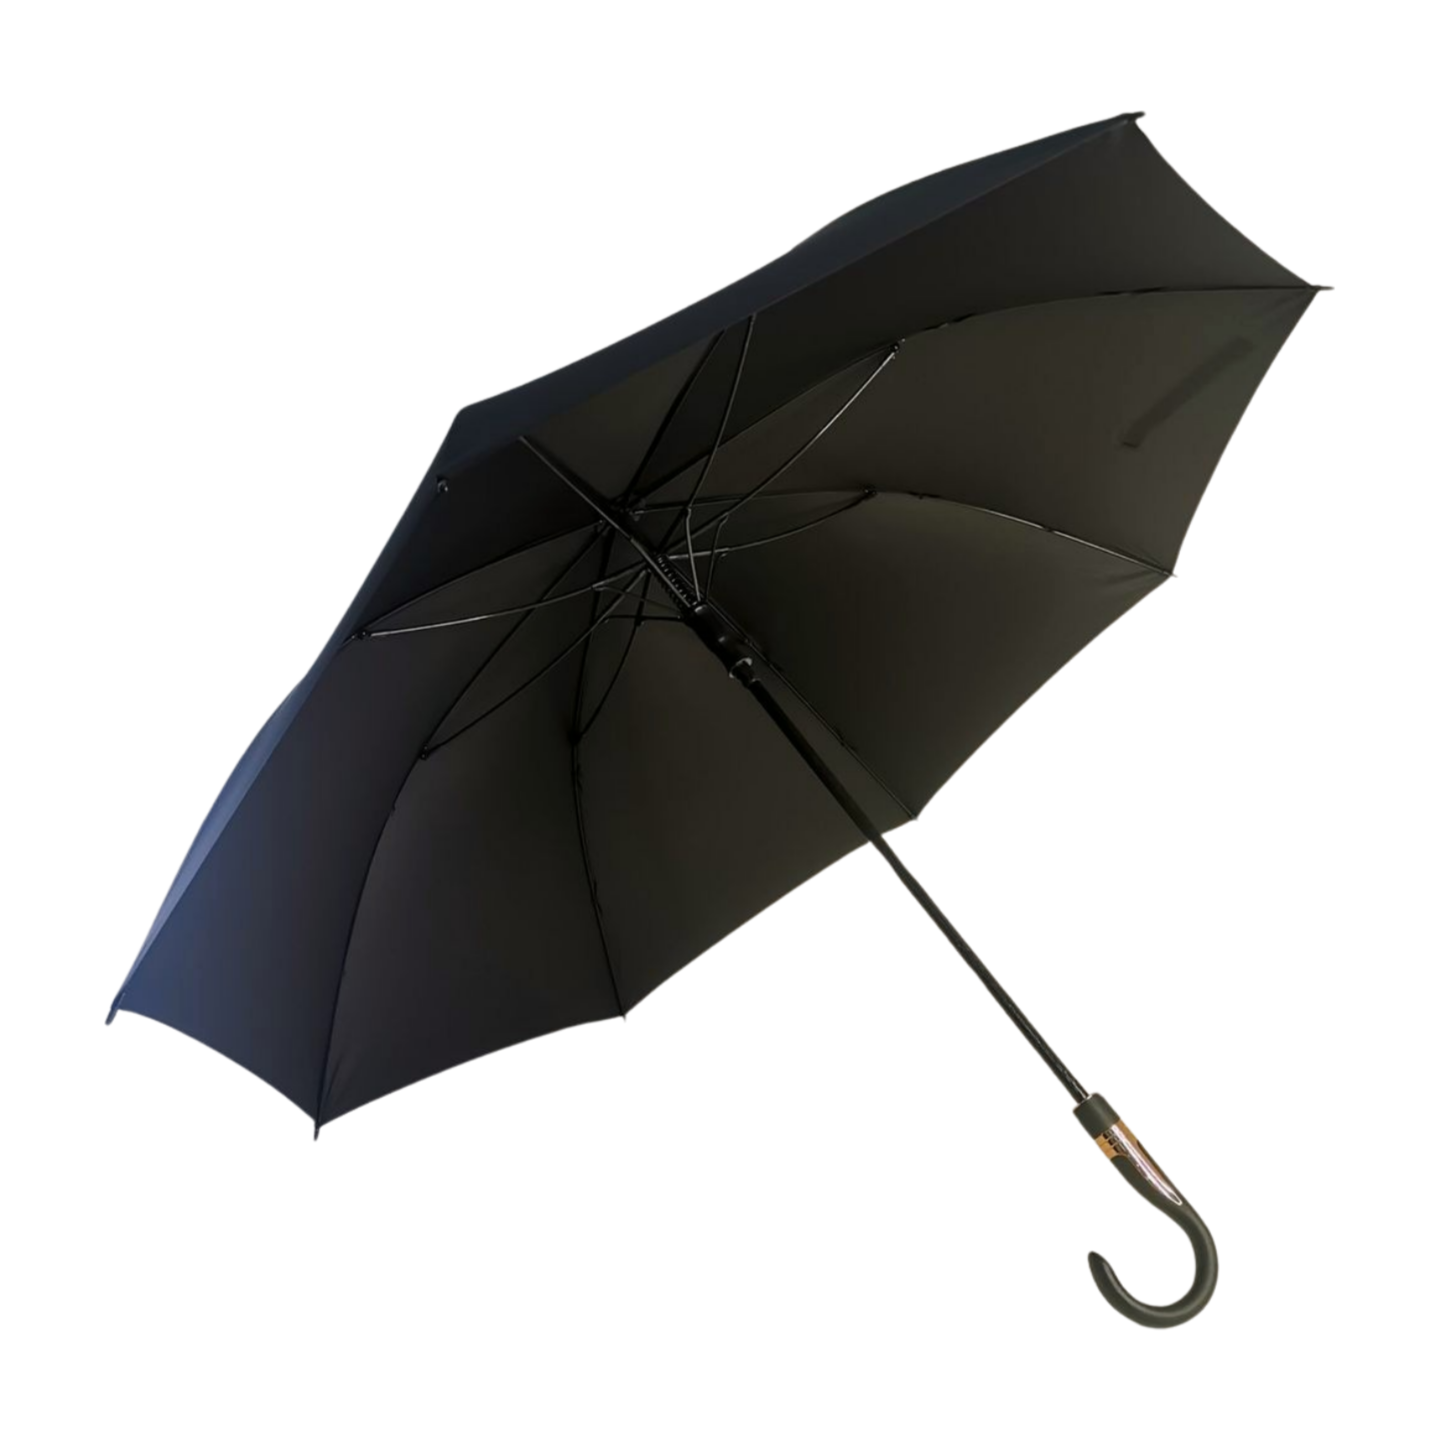 ttps://k913.goodao.net/60-golf-umbrel..business-style-product/